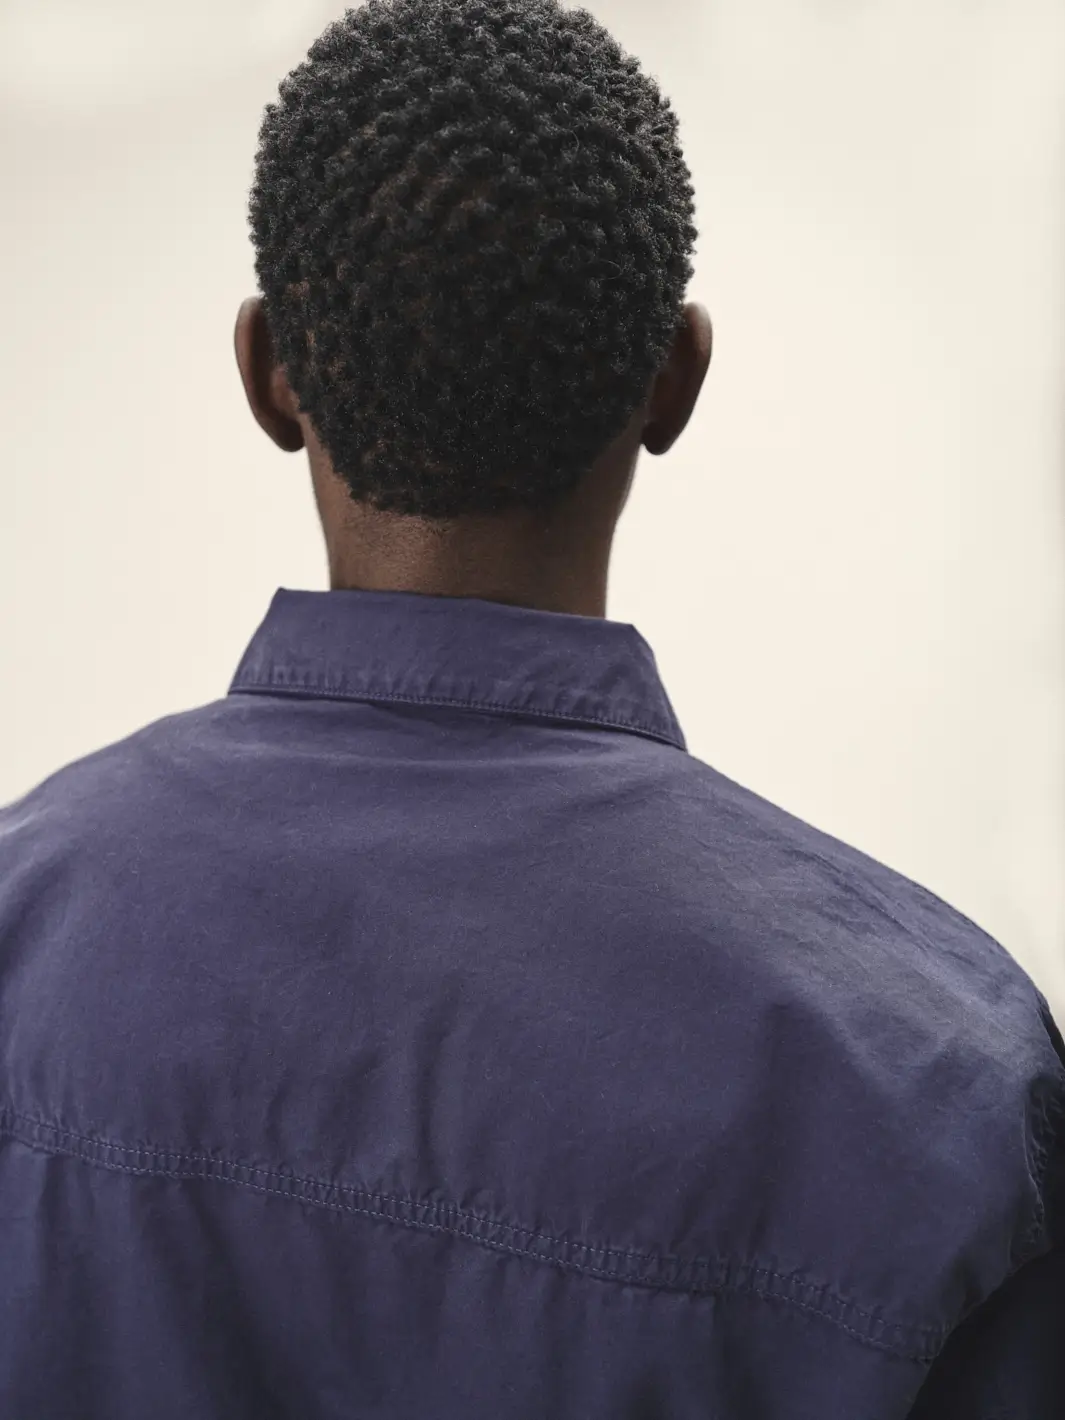 Männliches Model mit dem Rücken zur Kamera, Fokus auf dunkelblauer Jacke